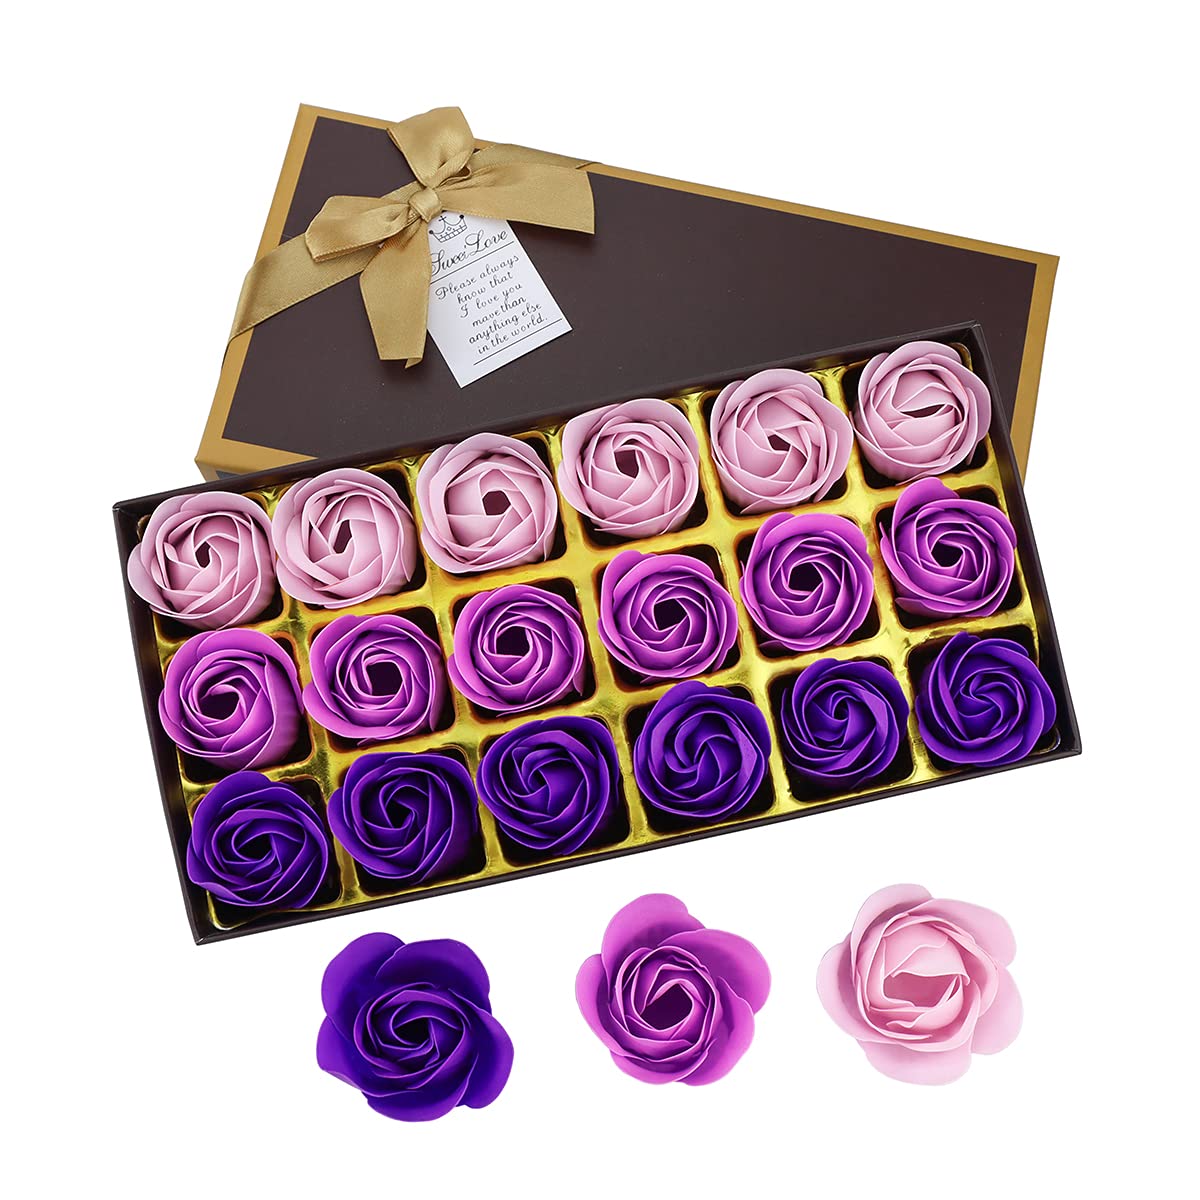 JIALEEY Floral Scented Bath Soap Rose Flower Petals, 18 PCS Purple